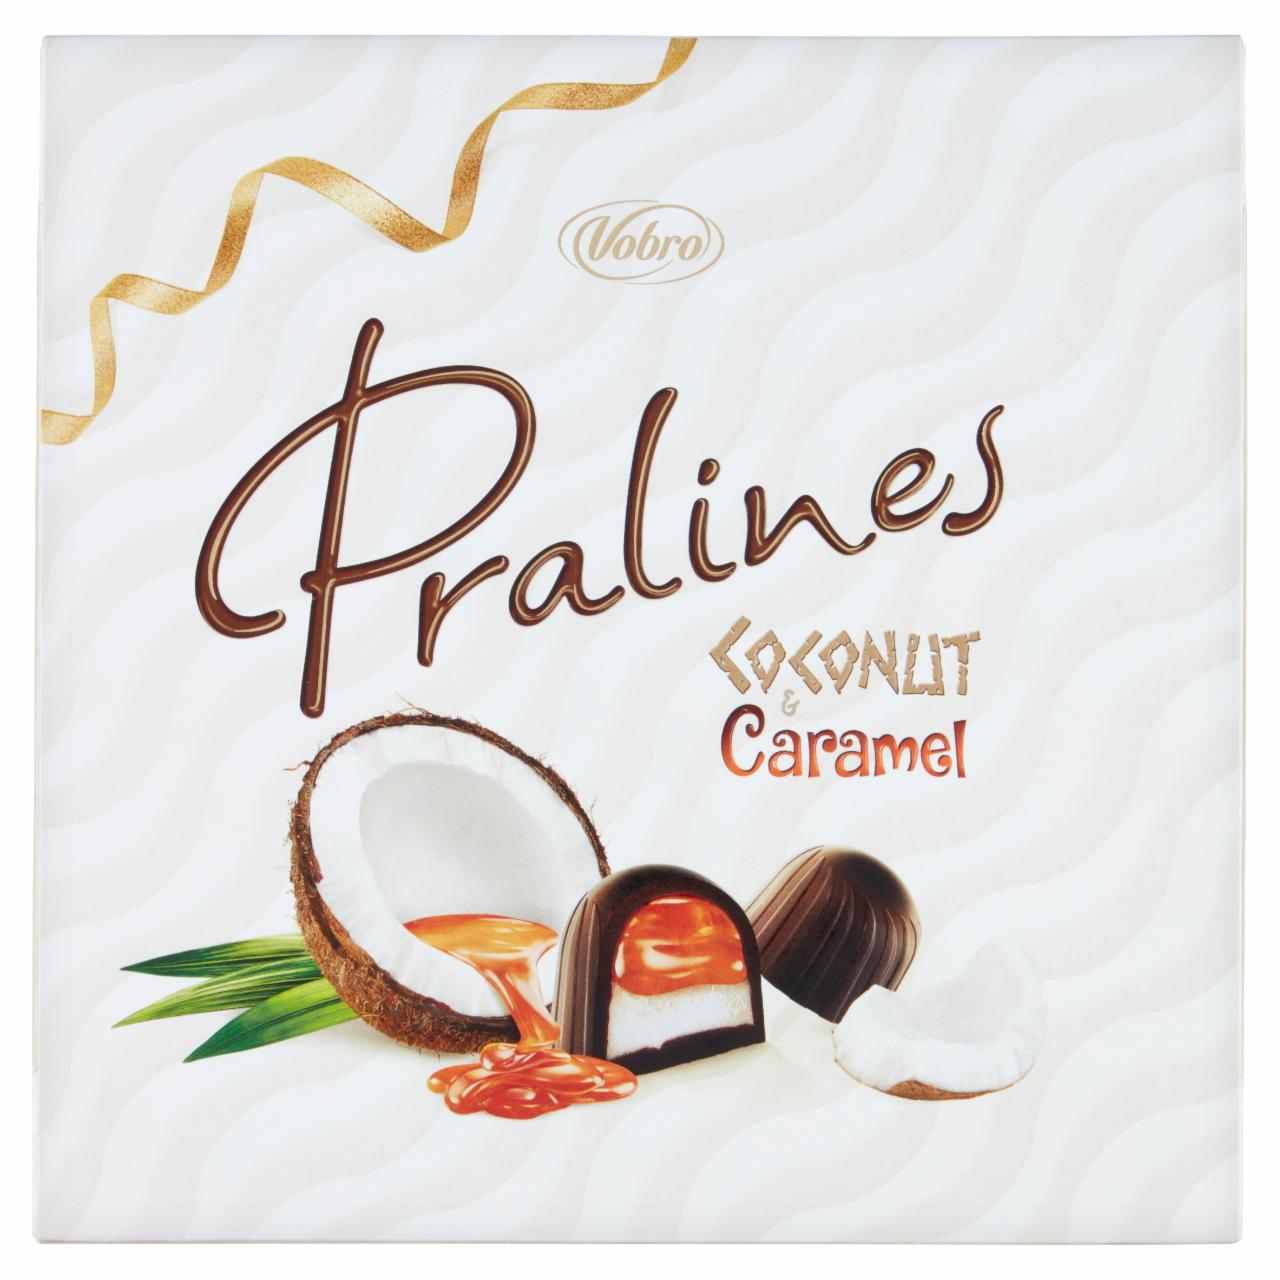 Zdjęcia - Vobro Coconut & Caramel Praliny z nadzieniem karmelowym i kremem kokosowym 125 g